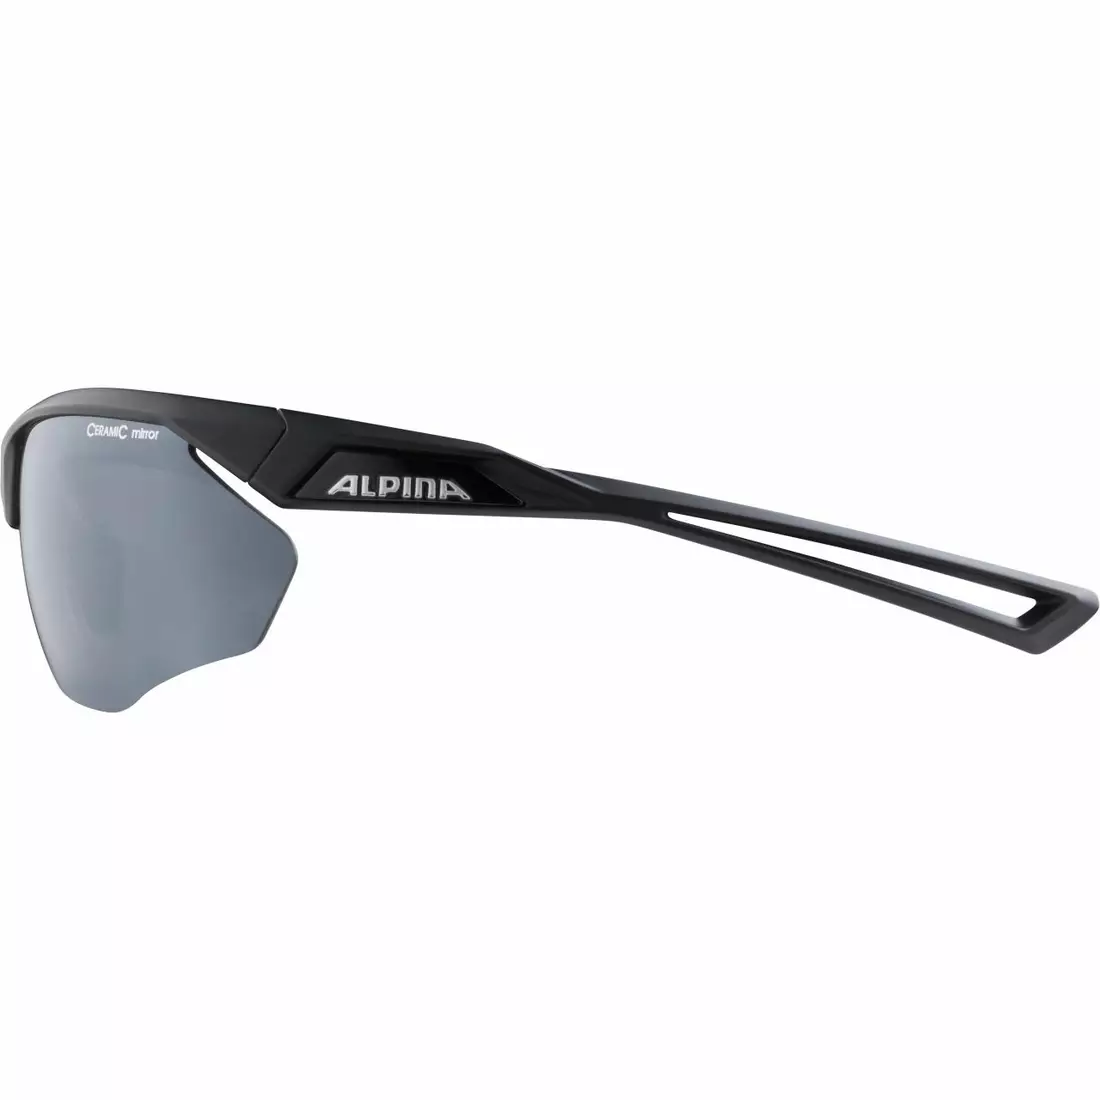 ALPINA ochelari sportivi nylos HR black matt A8635331